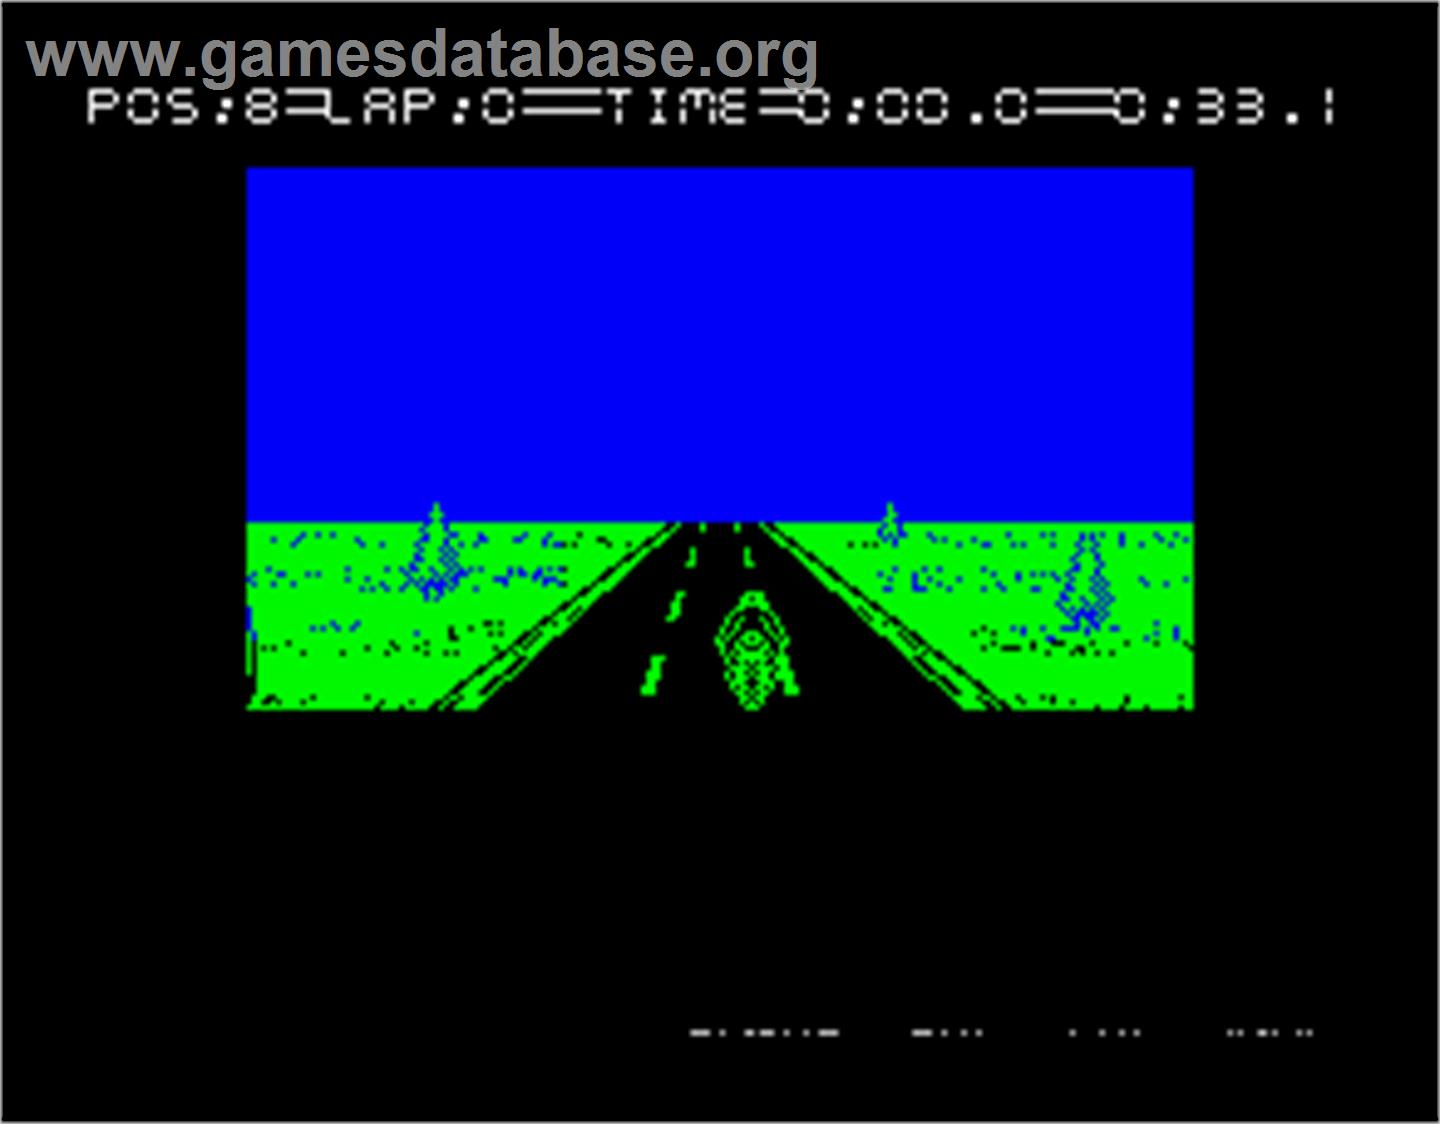 750cc Grand Prix - Sinclair ZX Spectrum - Artwork - In Game